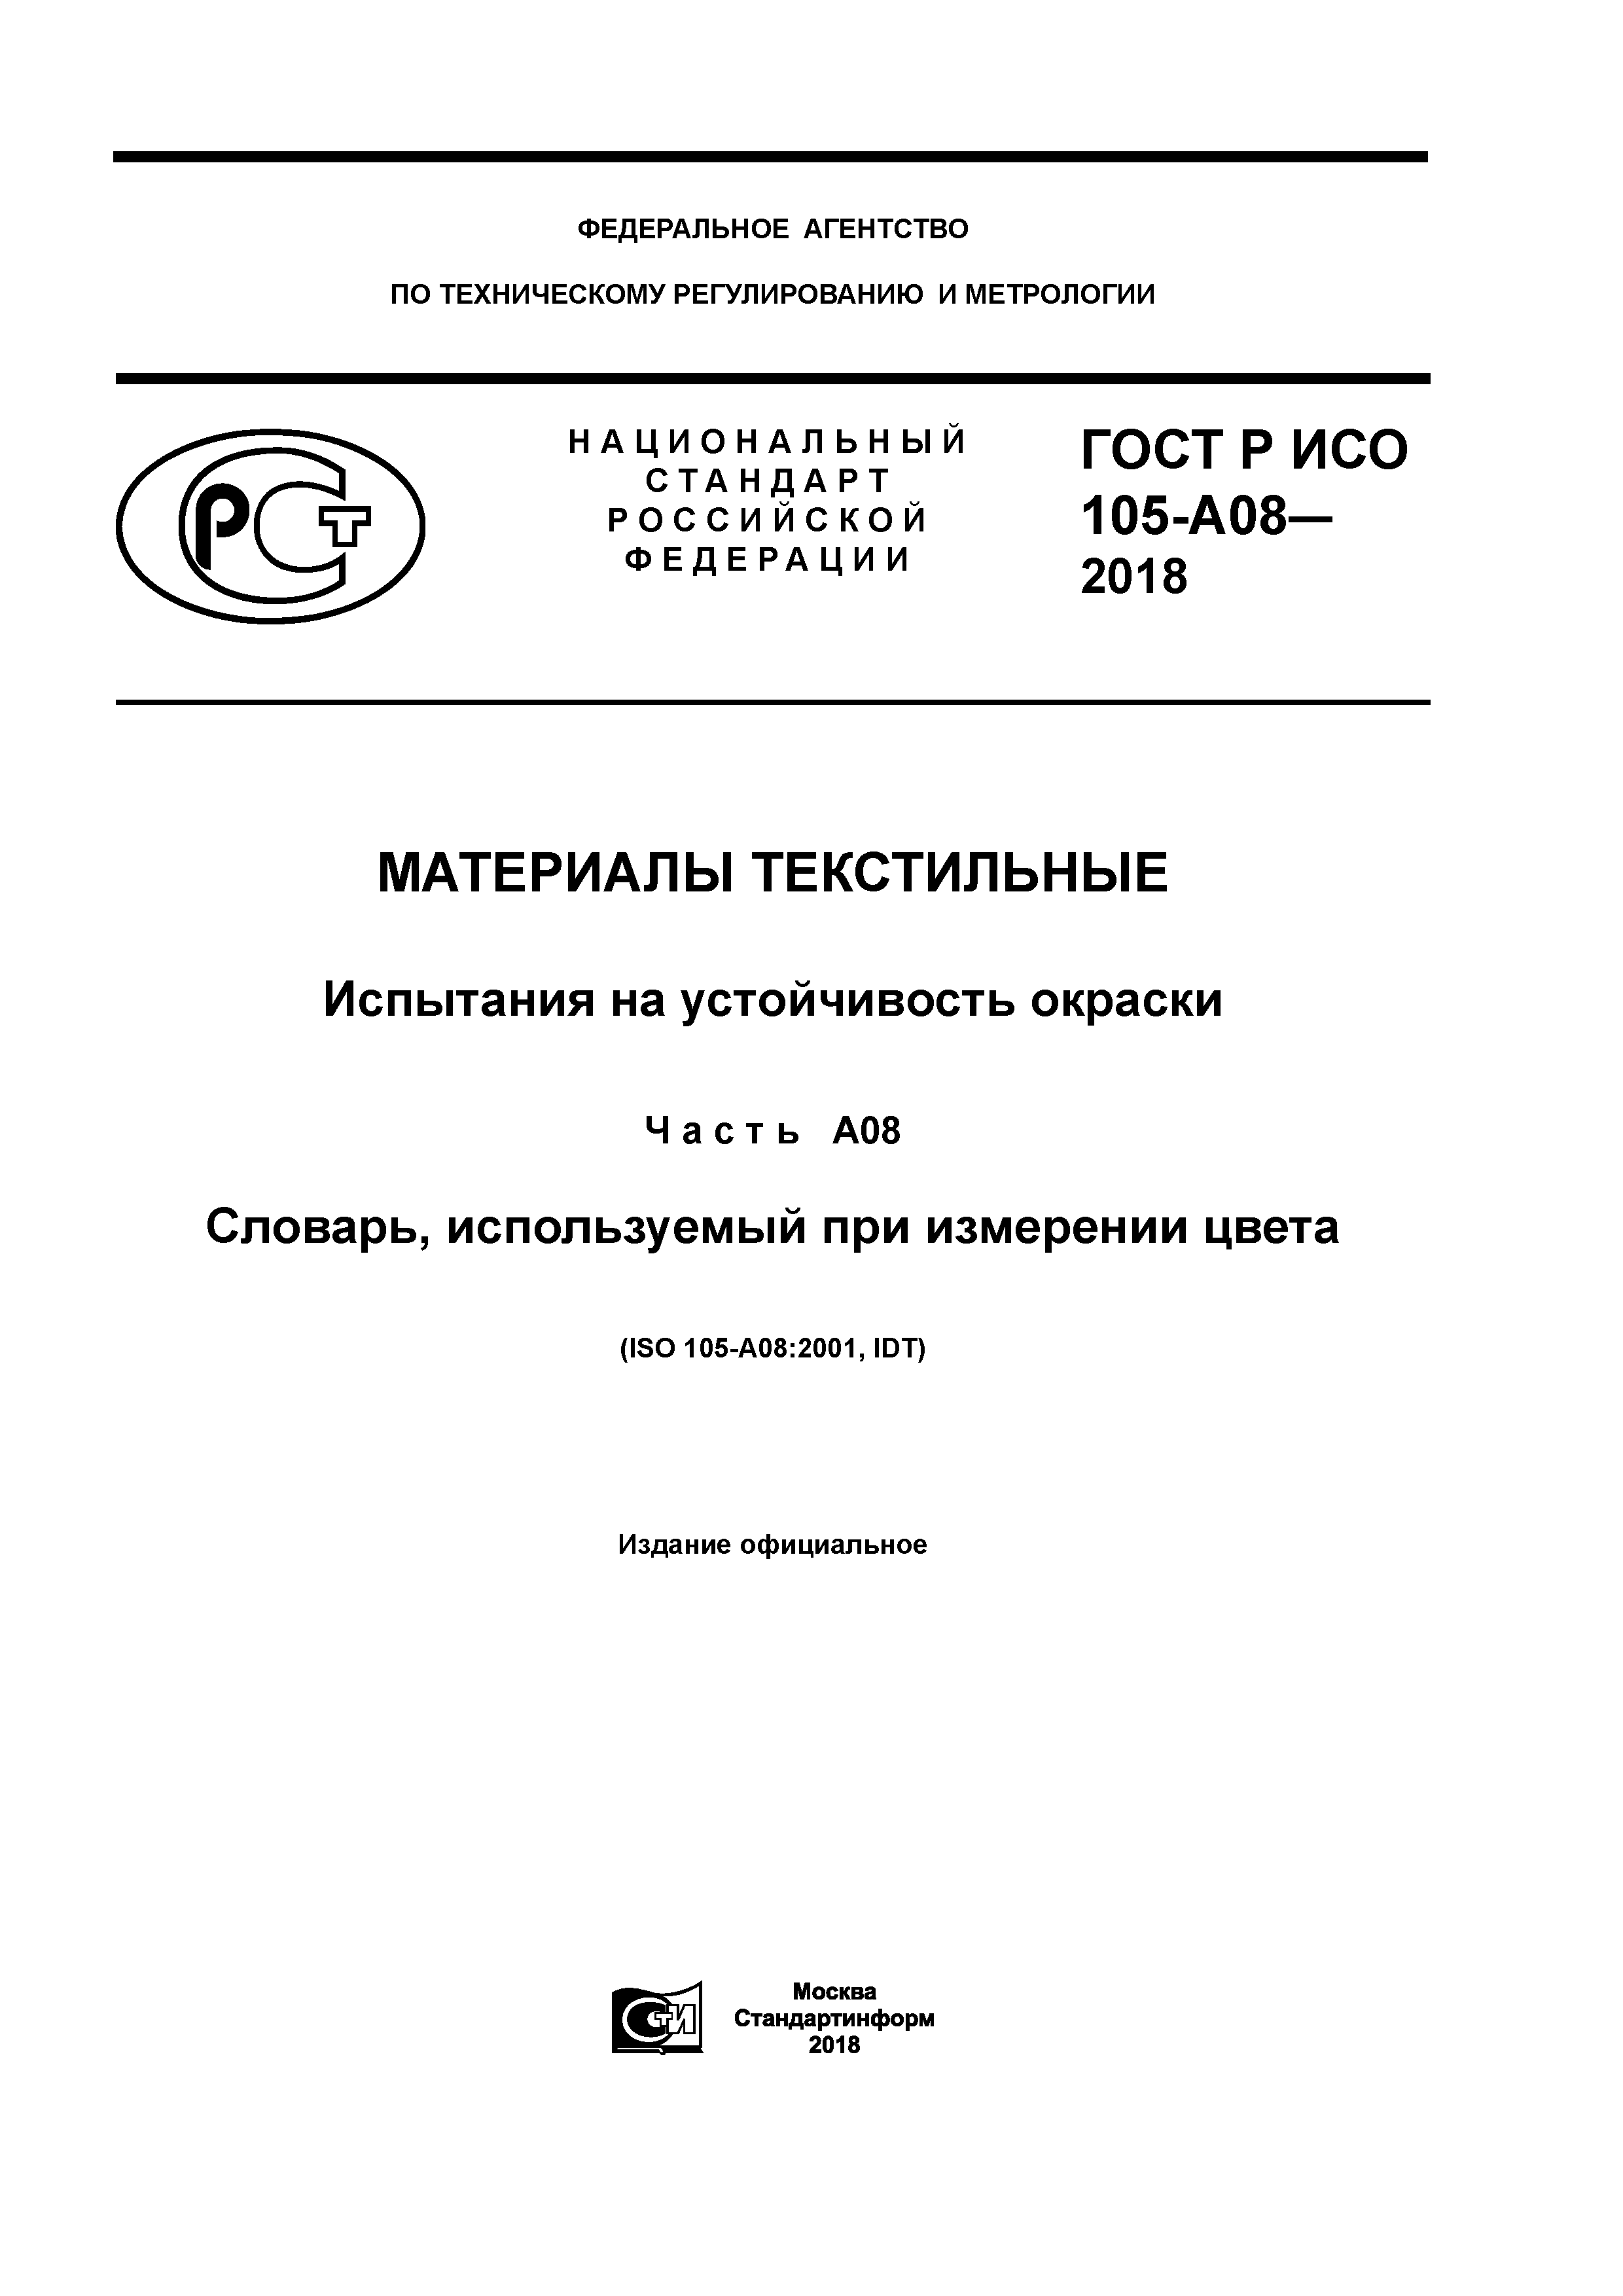 ГОСТ Р ИСО 105-A08-2018